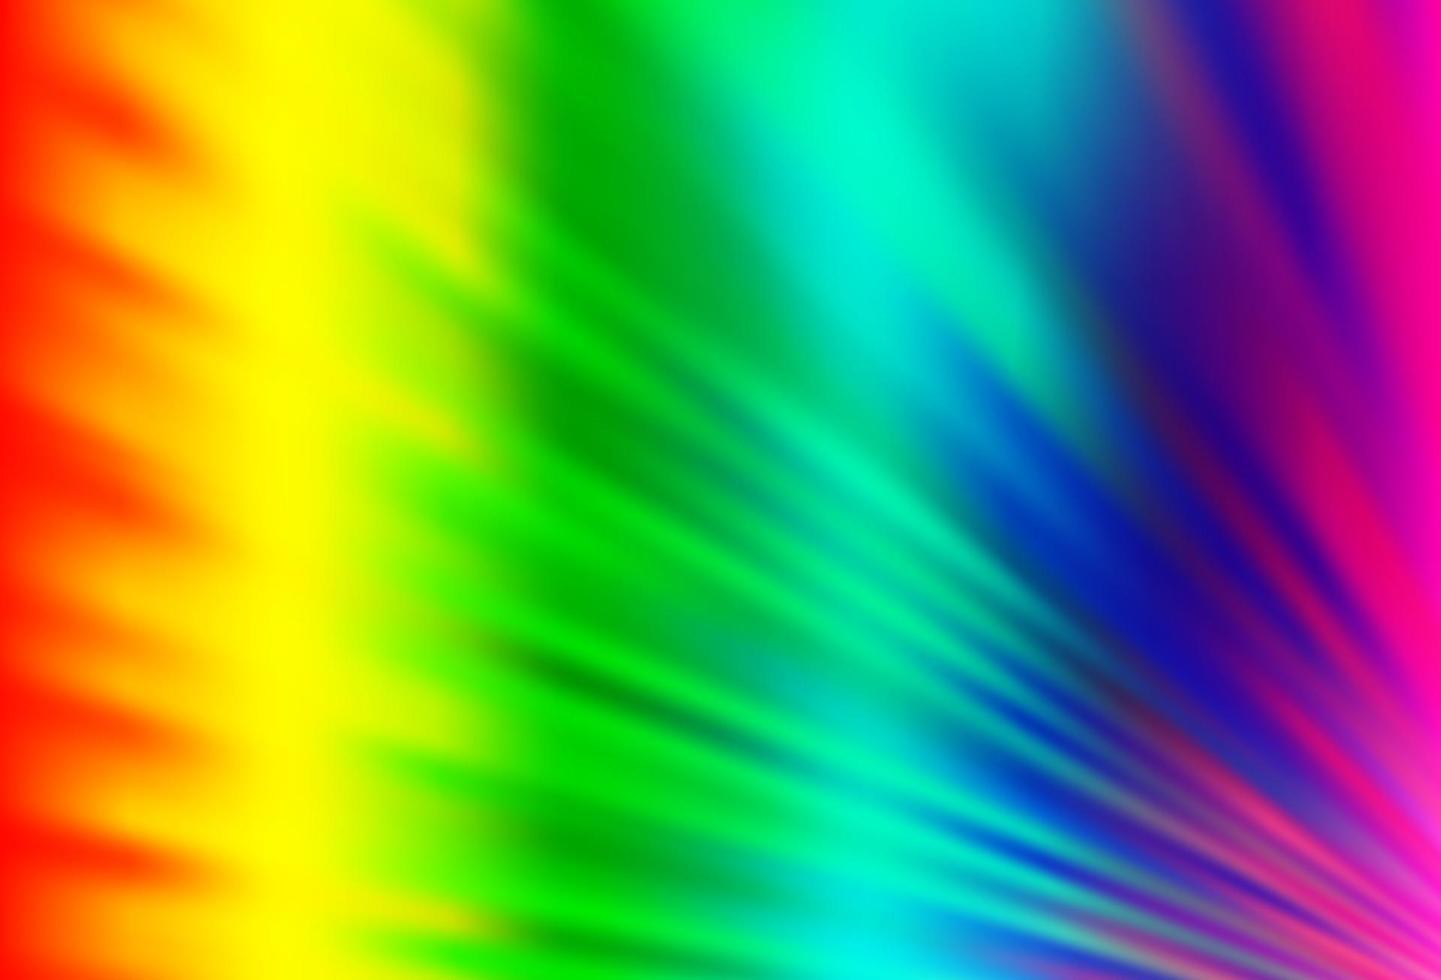 léger multicolore, motif vectoriel arc-en-ciel avec des lignes étroites.